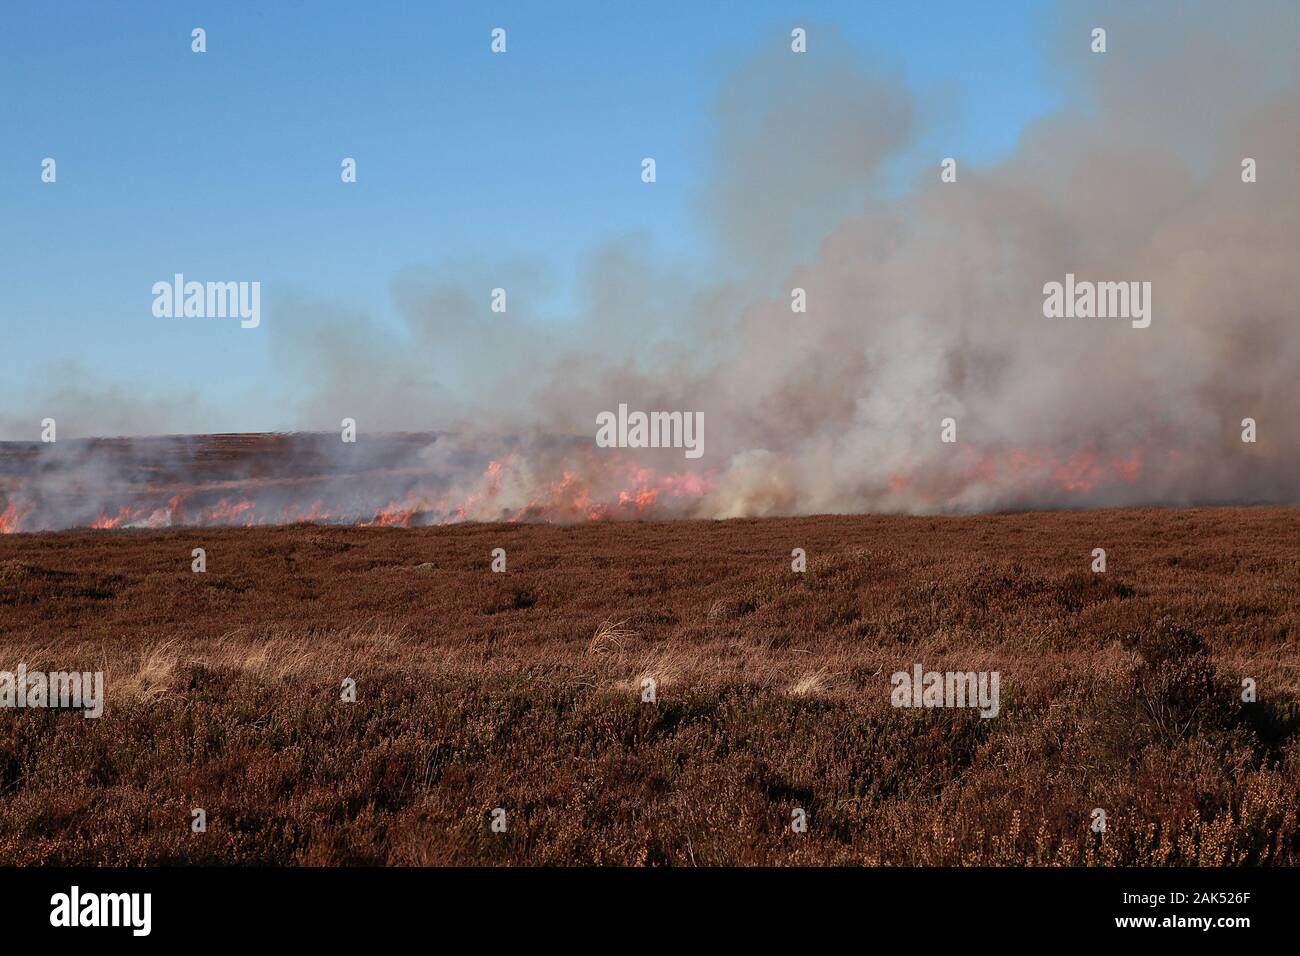 Bushfires in Australia Stock Photo